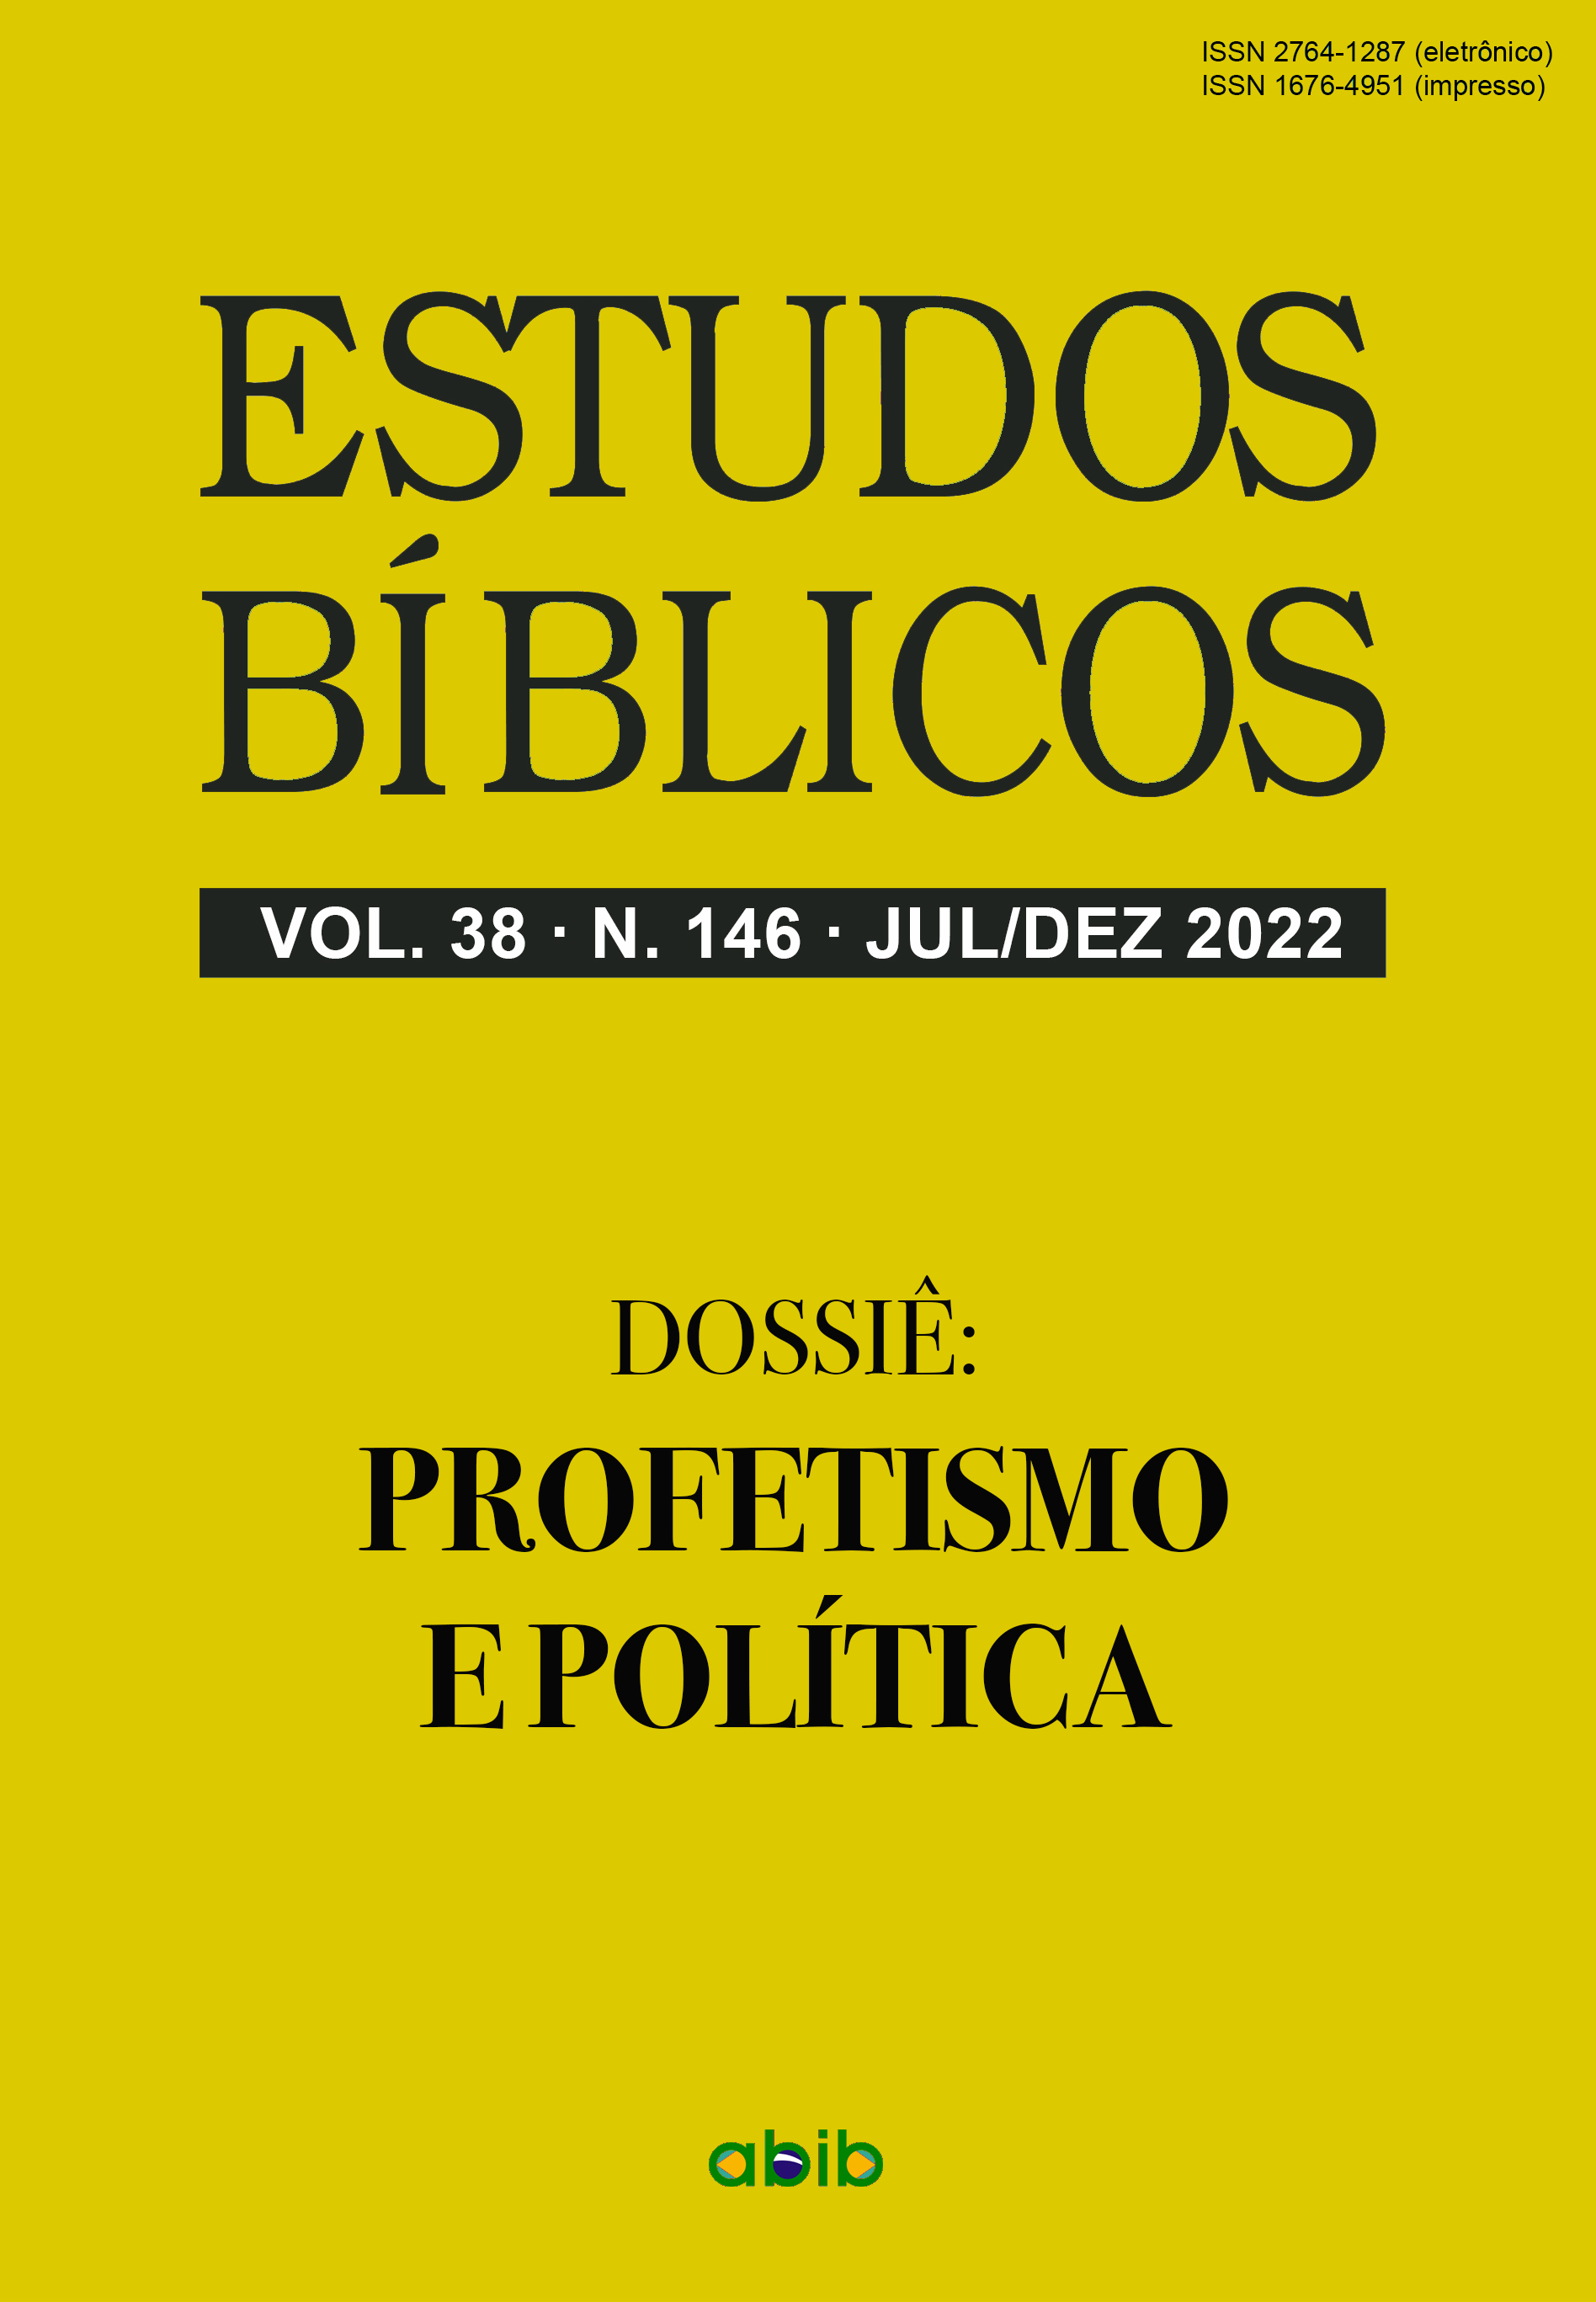 					Visualizar v. 38 n. 146 (2022): Estudos Bíblicos - Dossiê: Profetismo e política
				